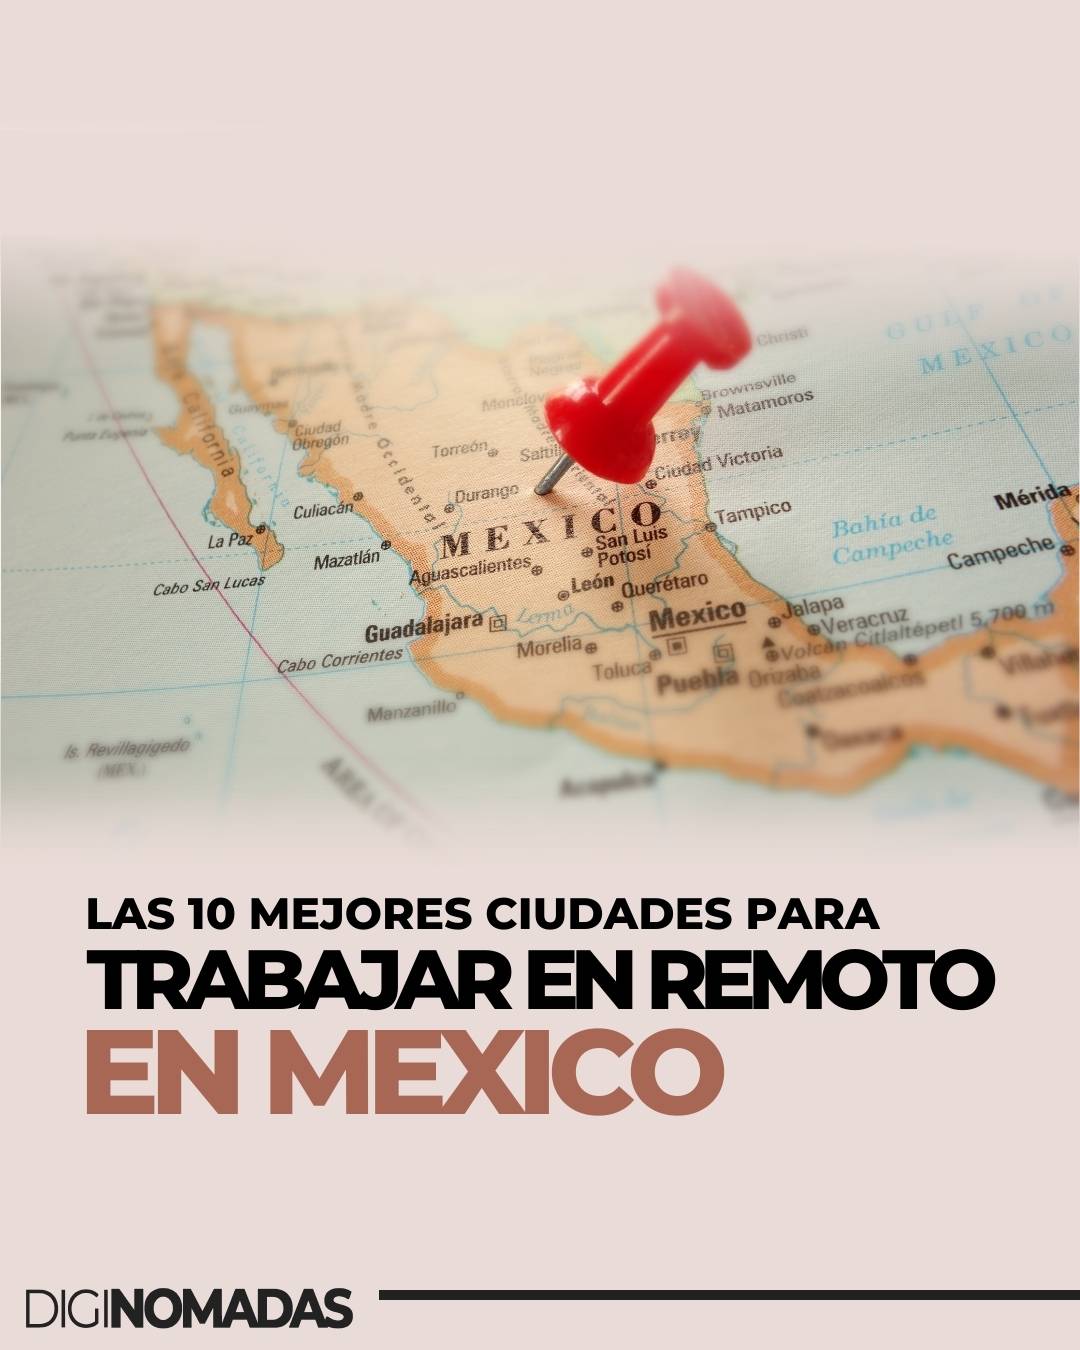 Las 10 mejores ciudades para trabajar en remoto desde México